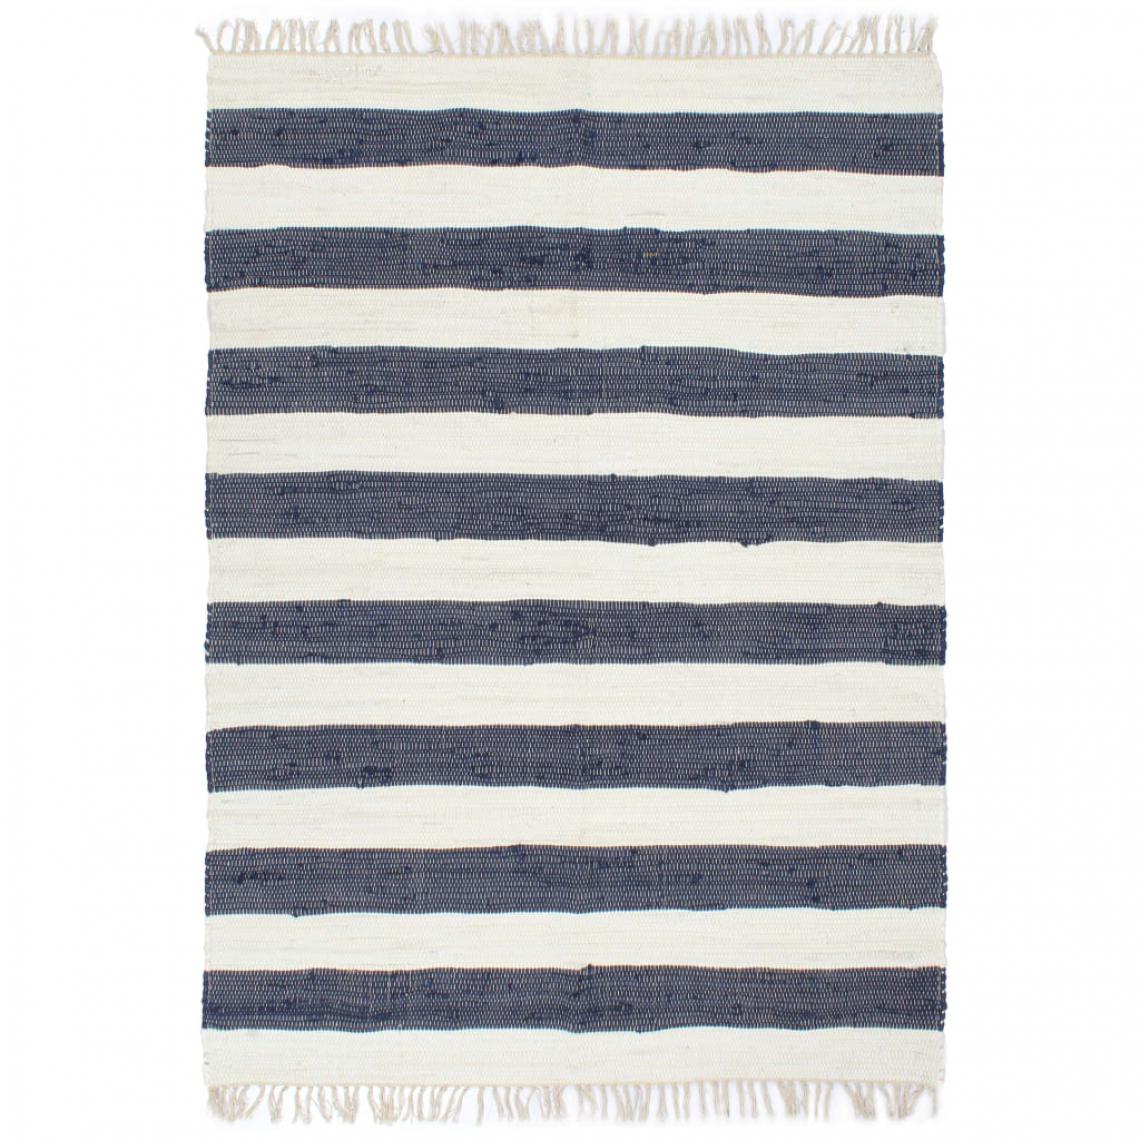 Icaverne - Inedit Décorations collection Maseru Tapis chindi tissé à la main Coton 120x170 cm Bleu et blanc - Tapis